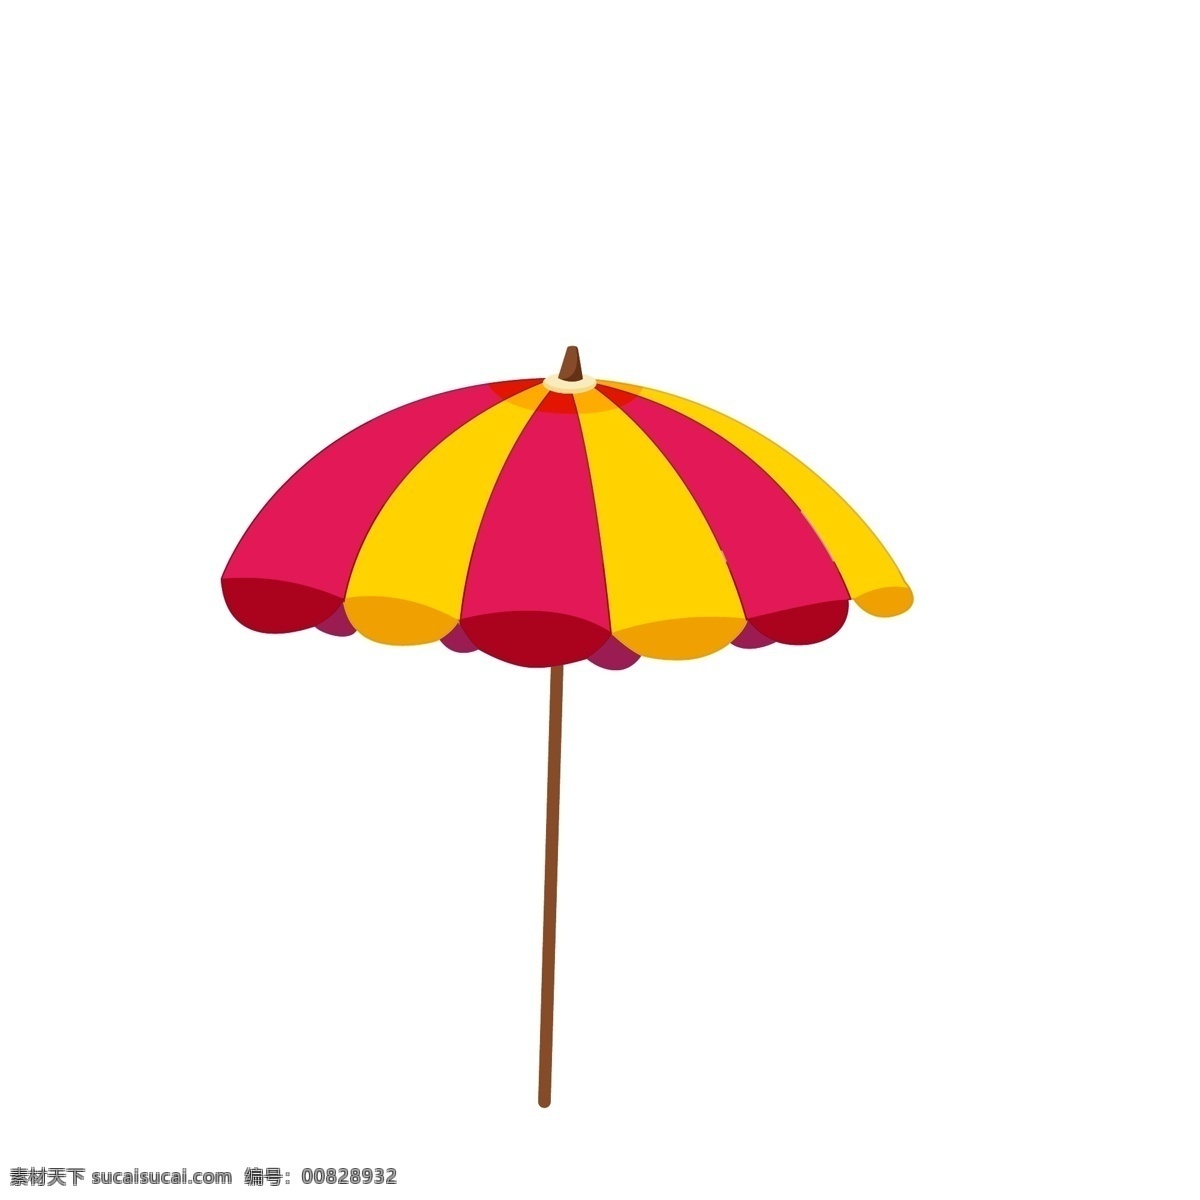 卡通 插画 太阳伞 伞 遮阳 大伞 雨伞 遮阳伞 沙滩伞 动漫动画